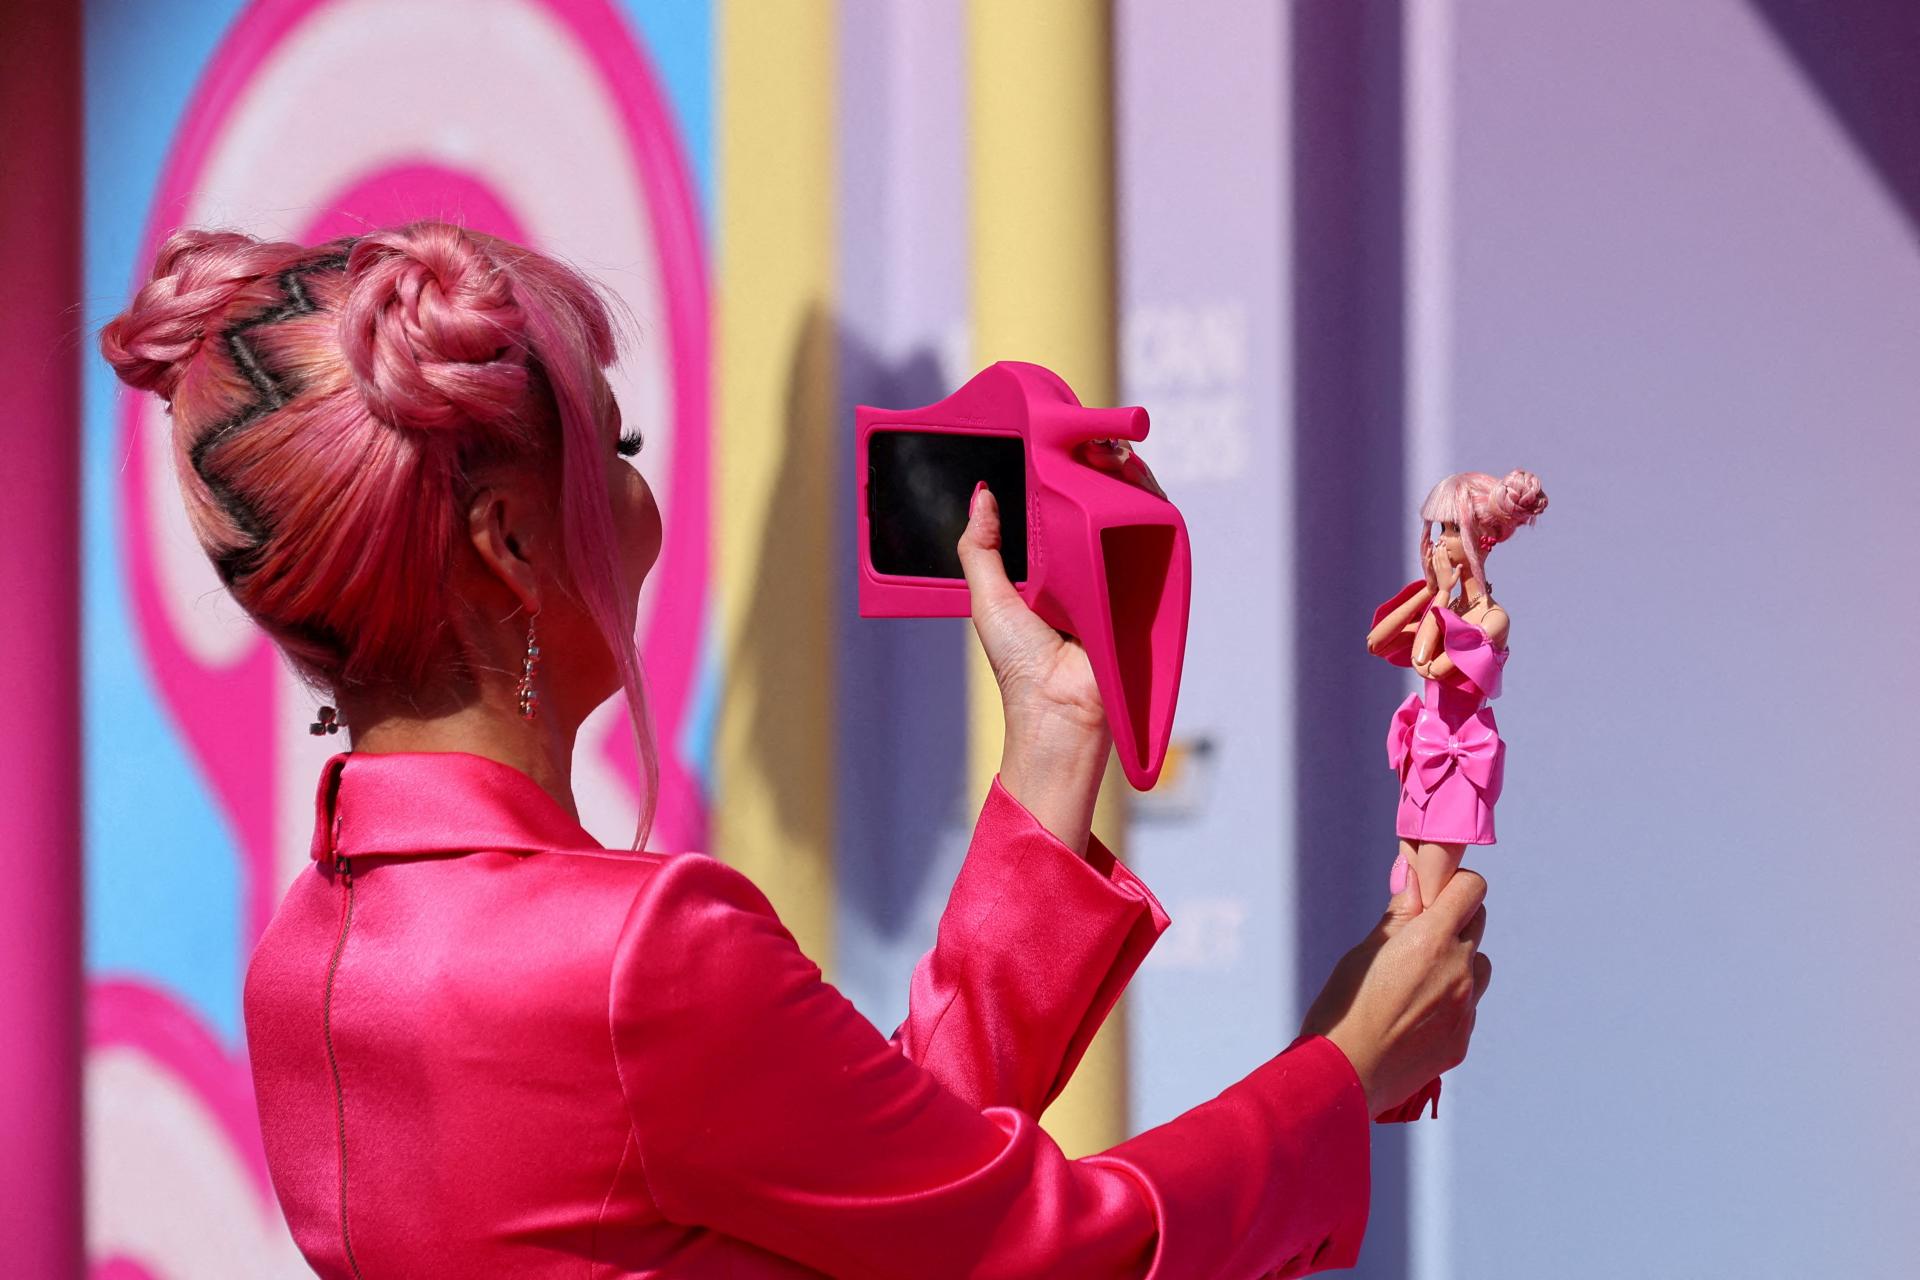 Znovuzrodenie kultovej značky? Akcie spoločnosti Mattel, výrobcu bábik Barbie, vzrástli o 19 percent